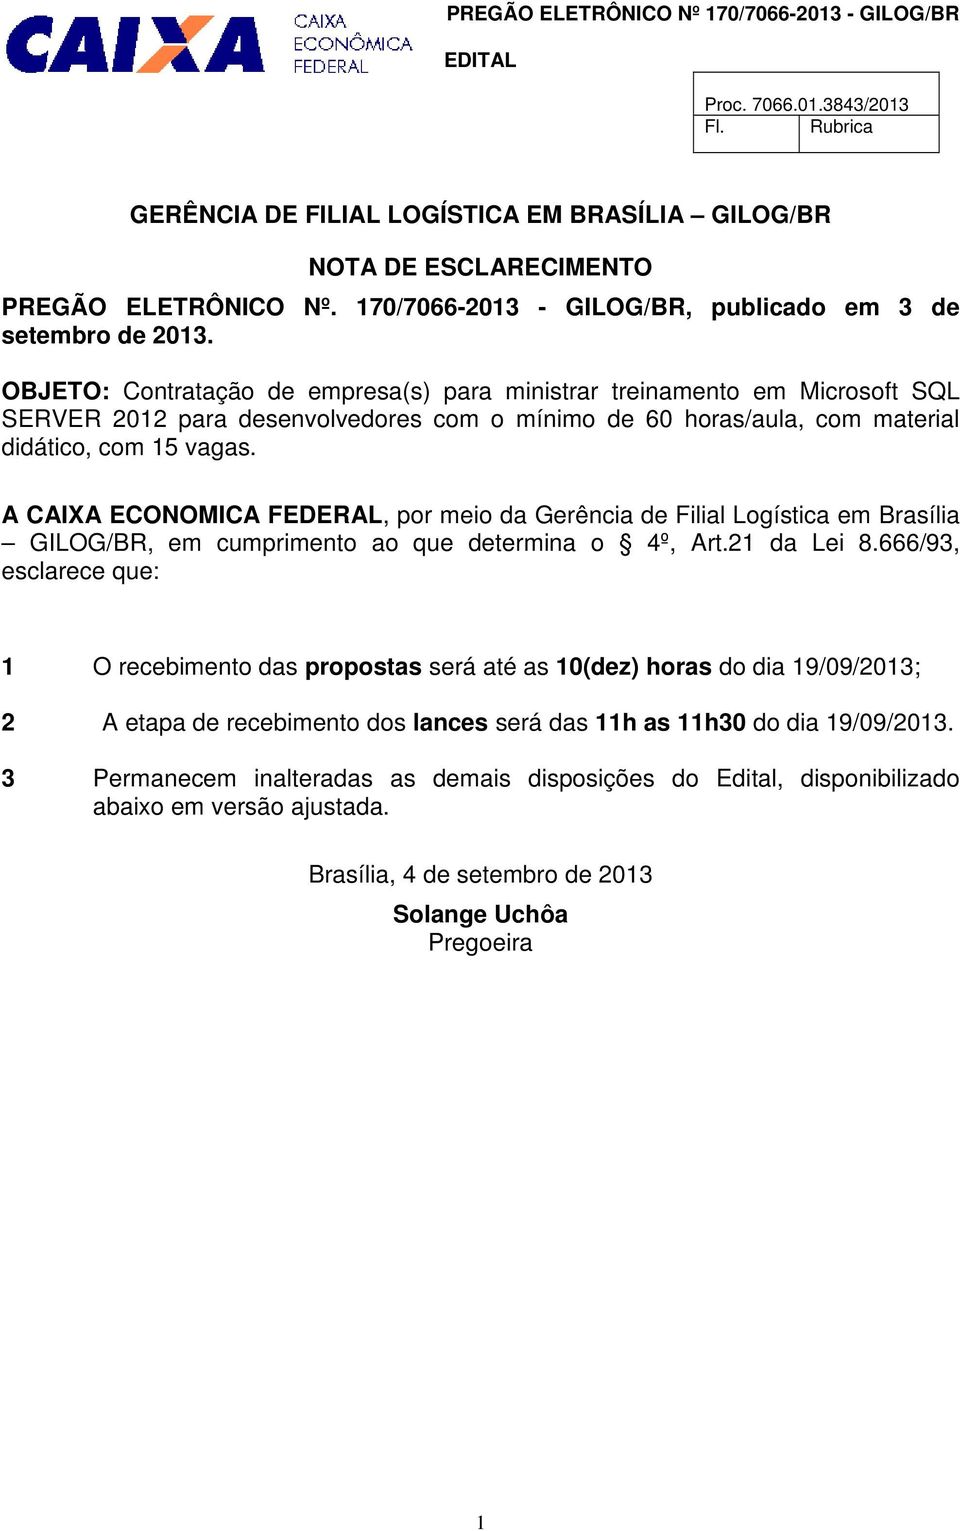 A CAIXA ECONOMICA FEDERAL, por meio da Gerência de Filial Logística em Brasília GILOG/BR, em cumprimento ao que determina o 4º, Art.21 da Lei 8.